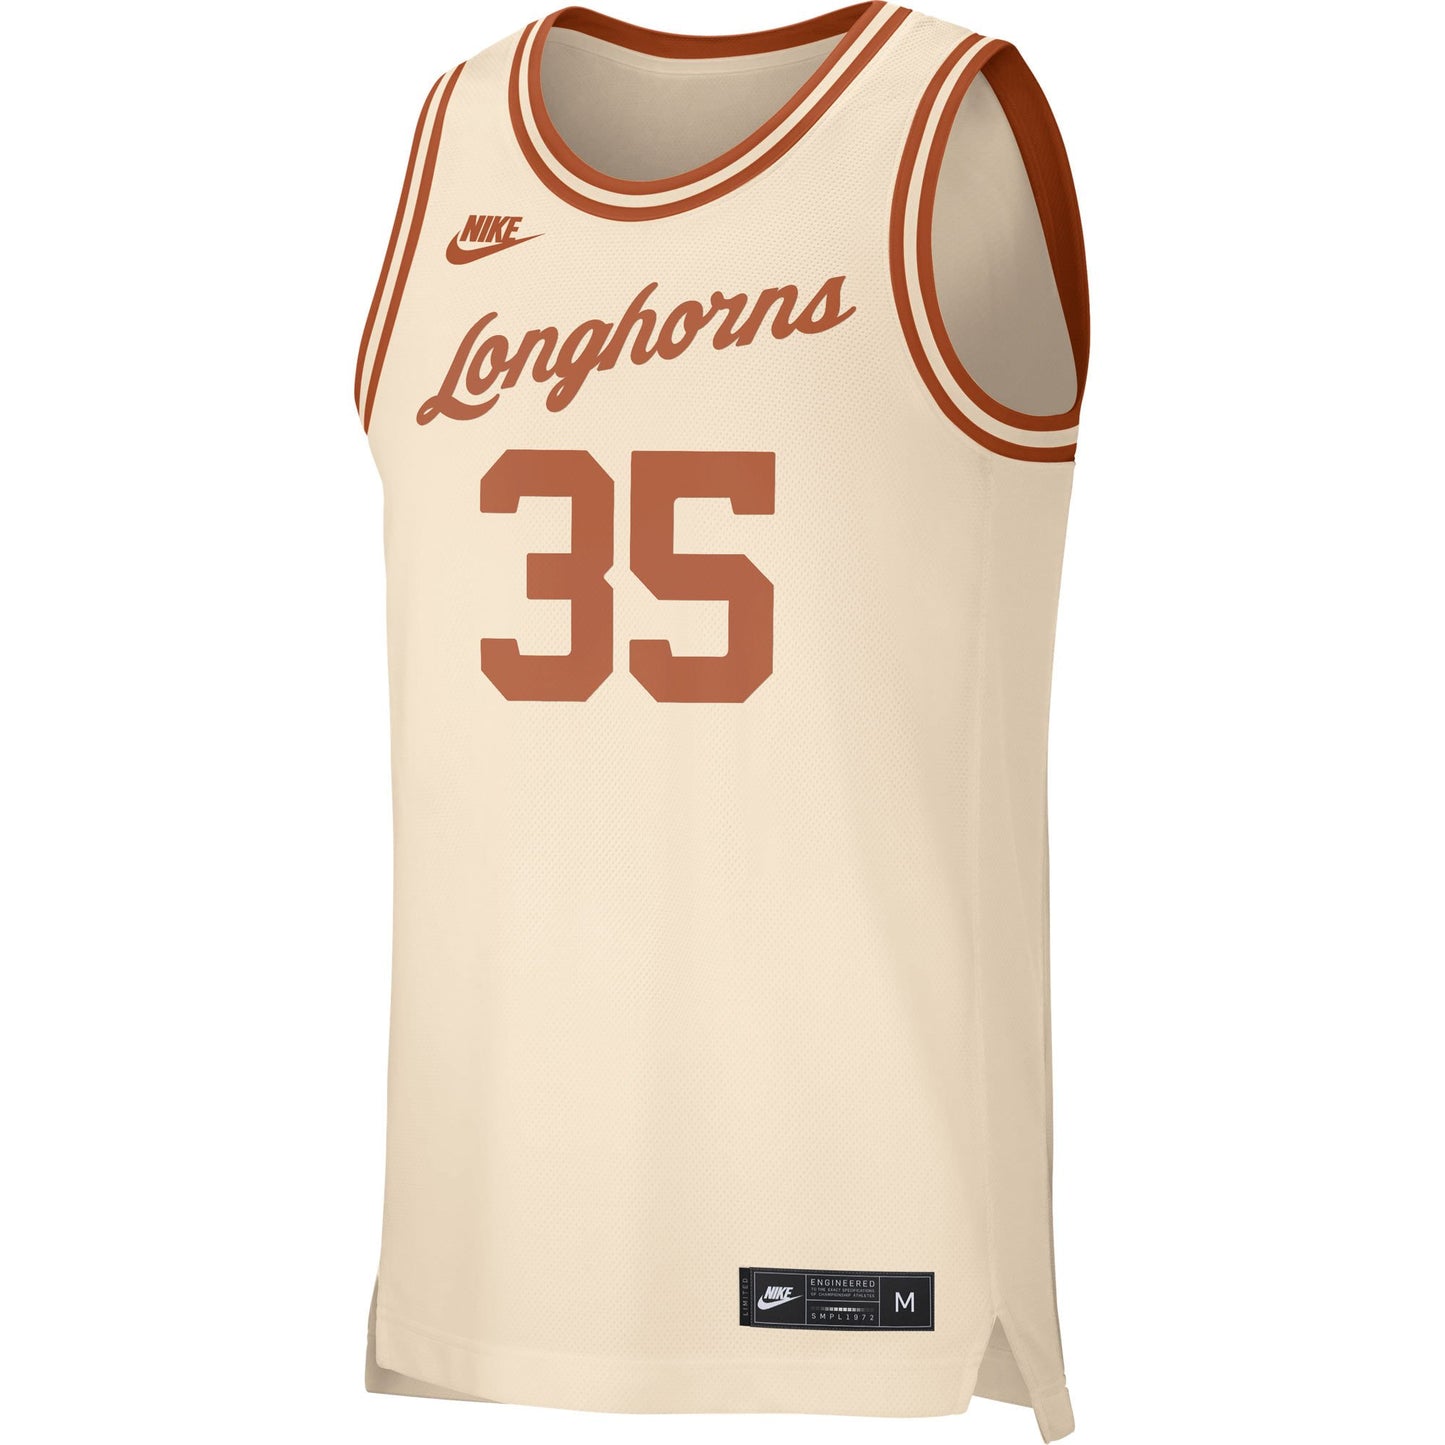 Men's NCAA Texas Longhorns Cream Retro #35 Replica Basketball Jersey